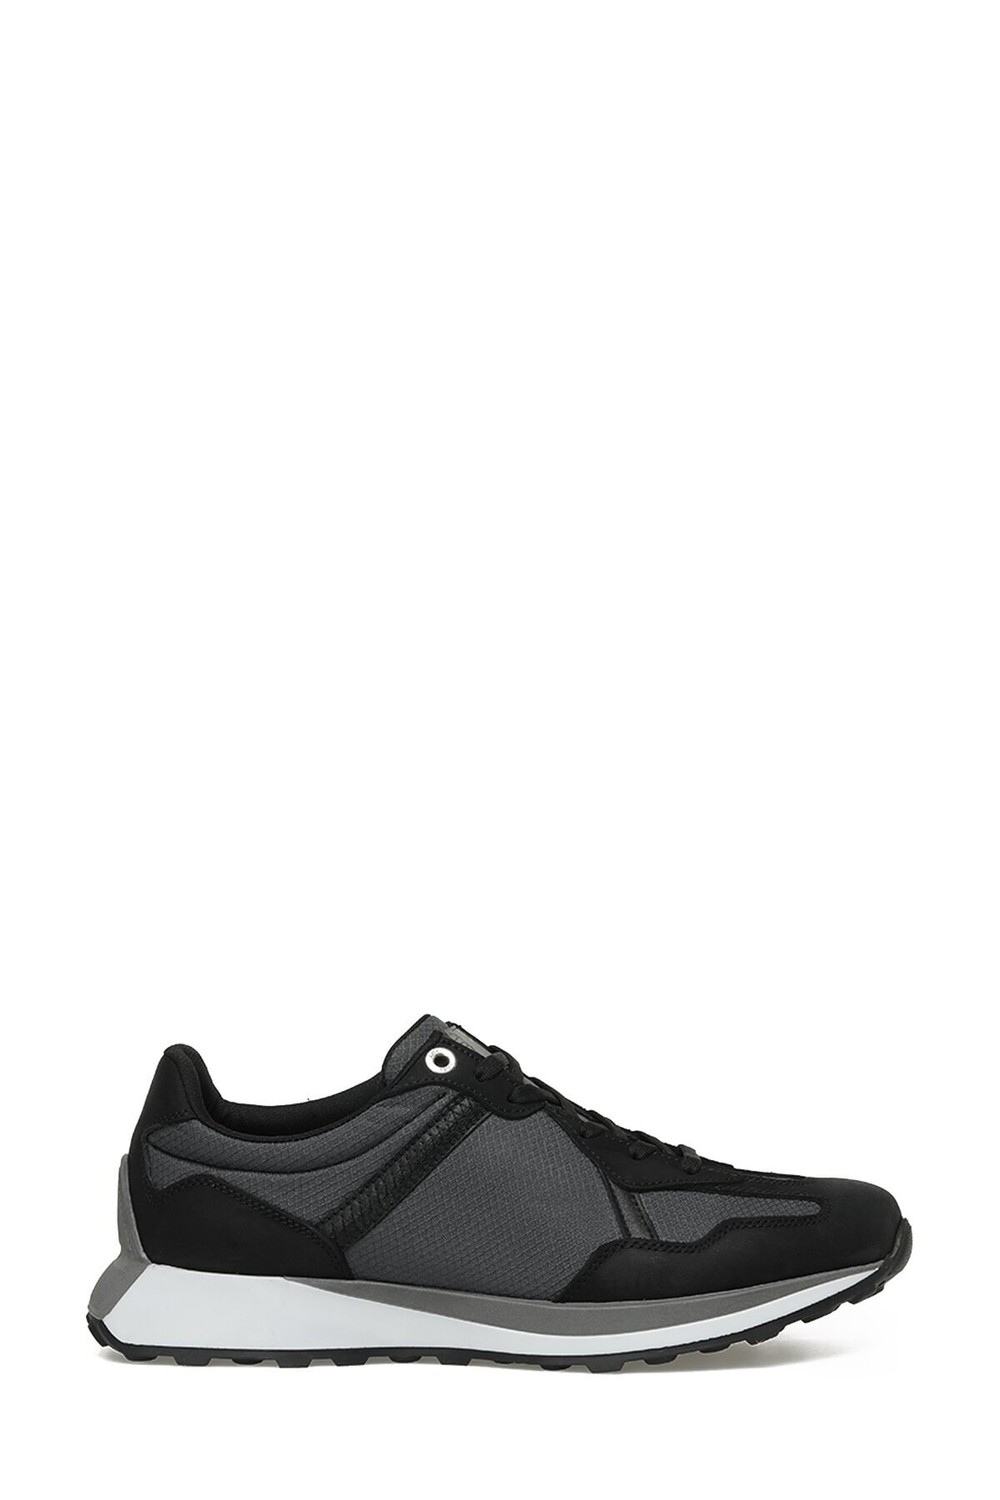 İnci Deluge 3fx Black Men's Sports Shoe